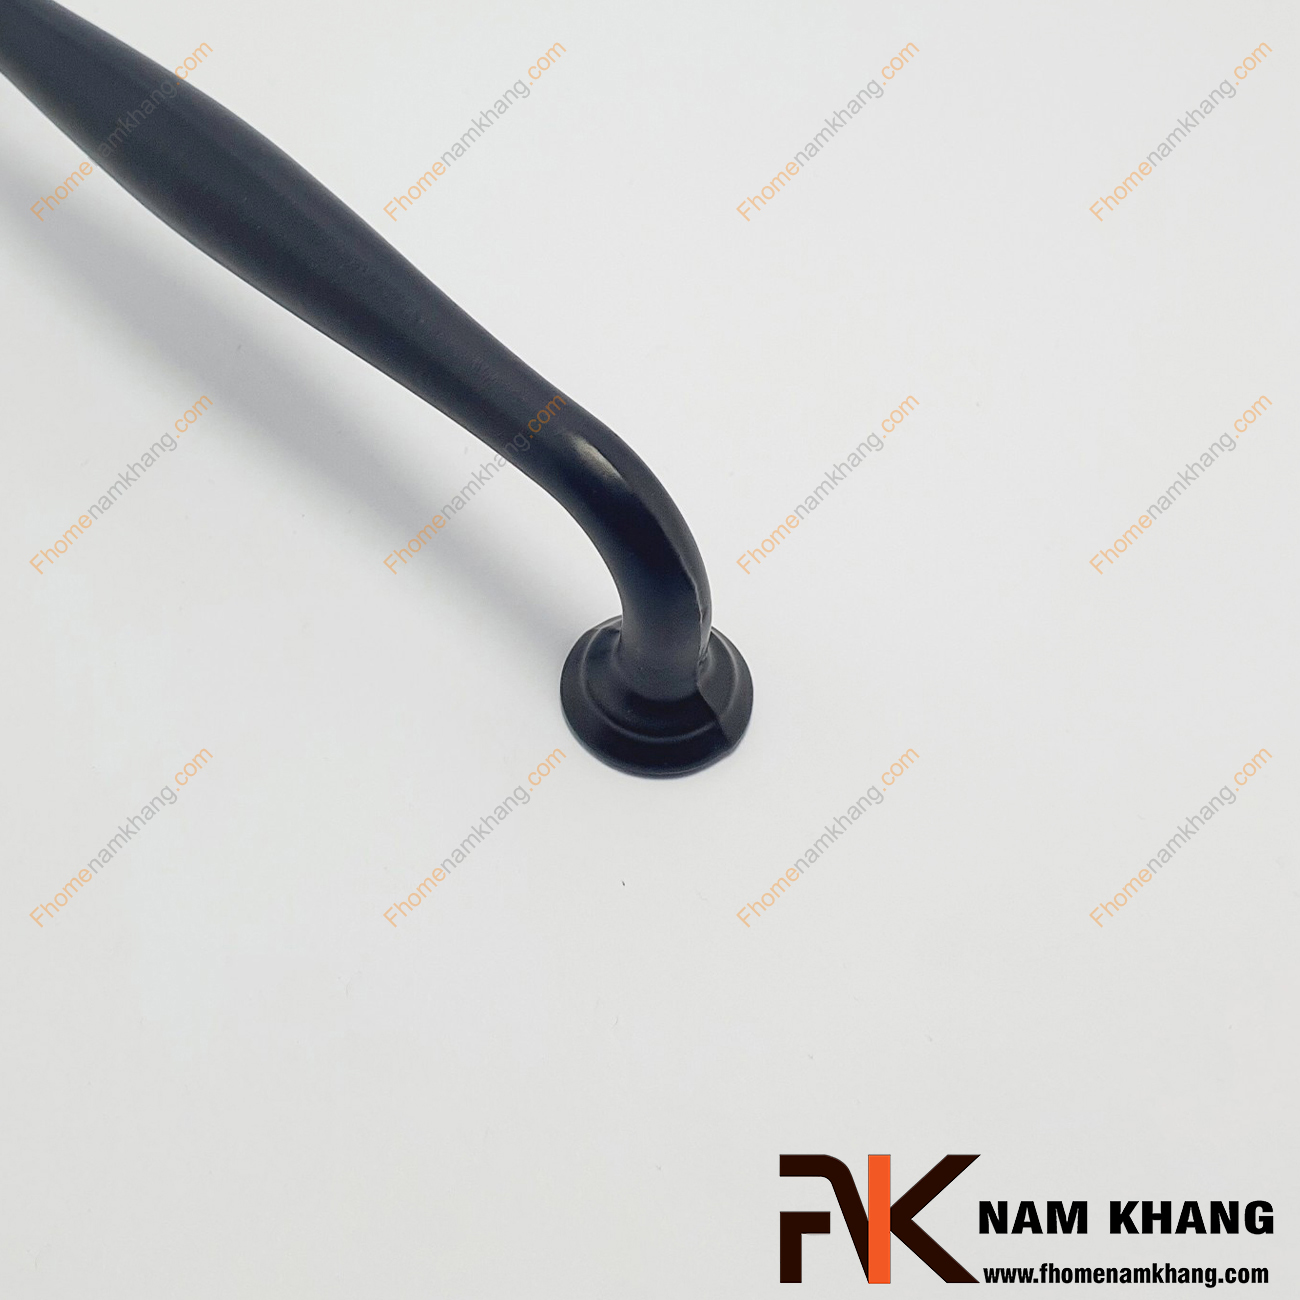 Tay nắm cửa tủ dạng trơn màu đen NK403L-D  có thiết kế đơn giản với phần thân tròn và dạng tròn ở hai đầu của tay nắm. 